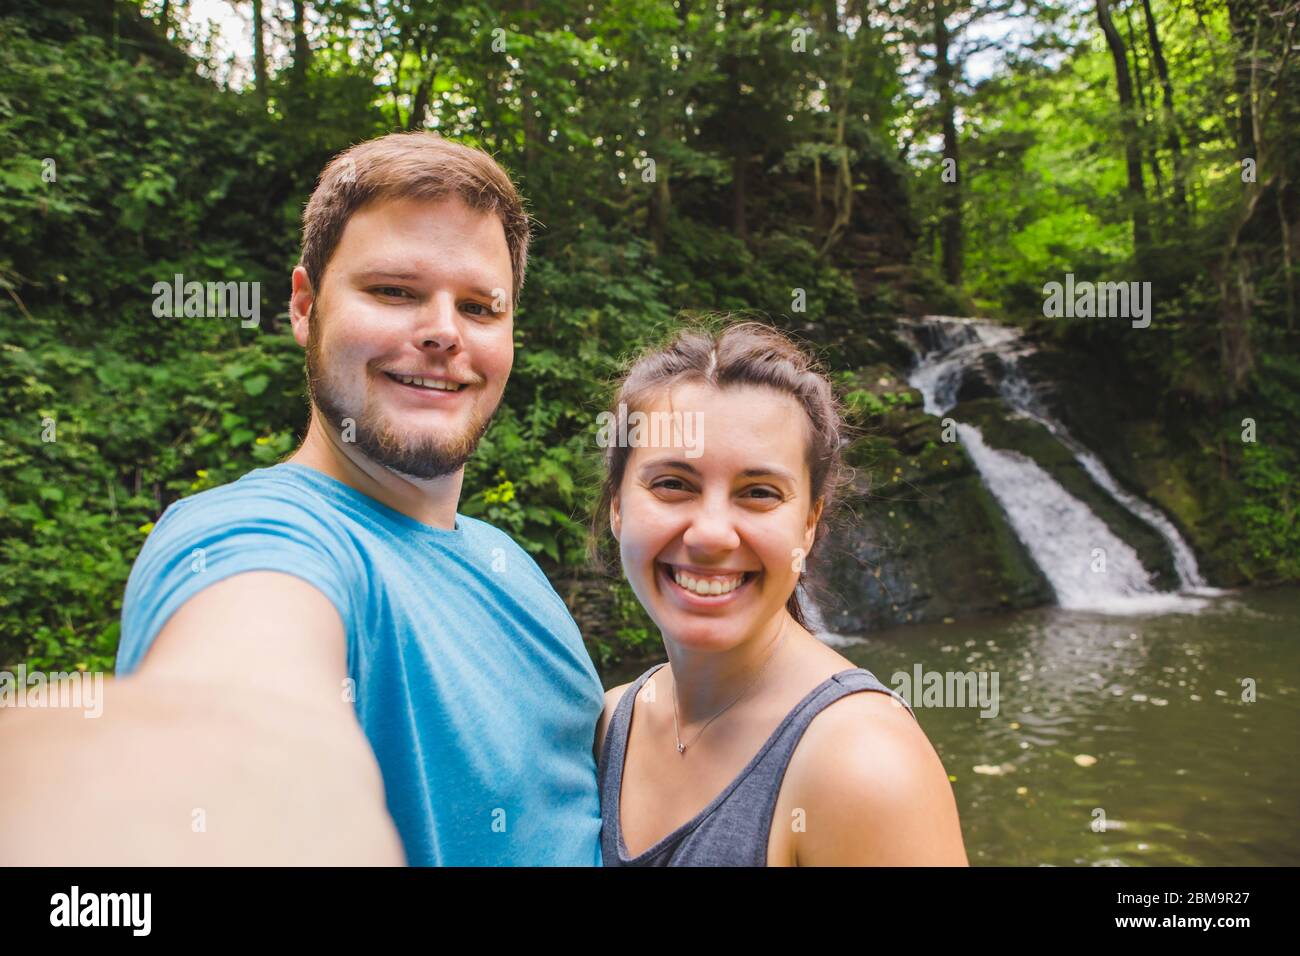 Lächelndes Paar, das Selfie vor einem Wasserfall im Wald nimmt Stockfoto